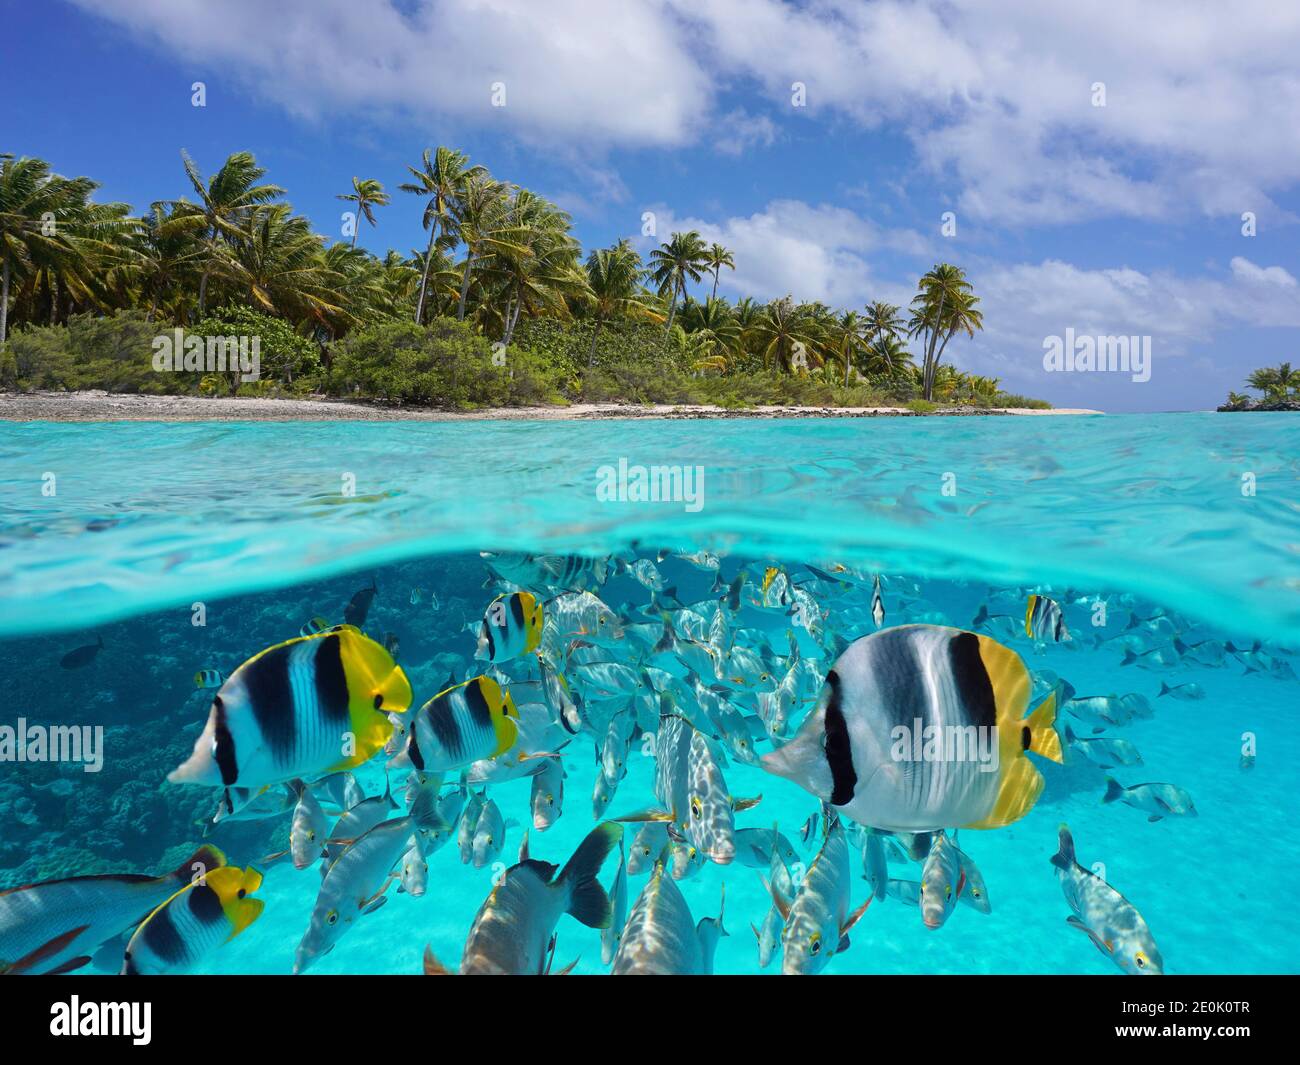 Paysage marin tropical sur et sous l'eau, littoral insulaire et groupe de poissons sous l'eau, océan Pacifique, Polynésie française, Océanie Banque D'Images